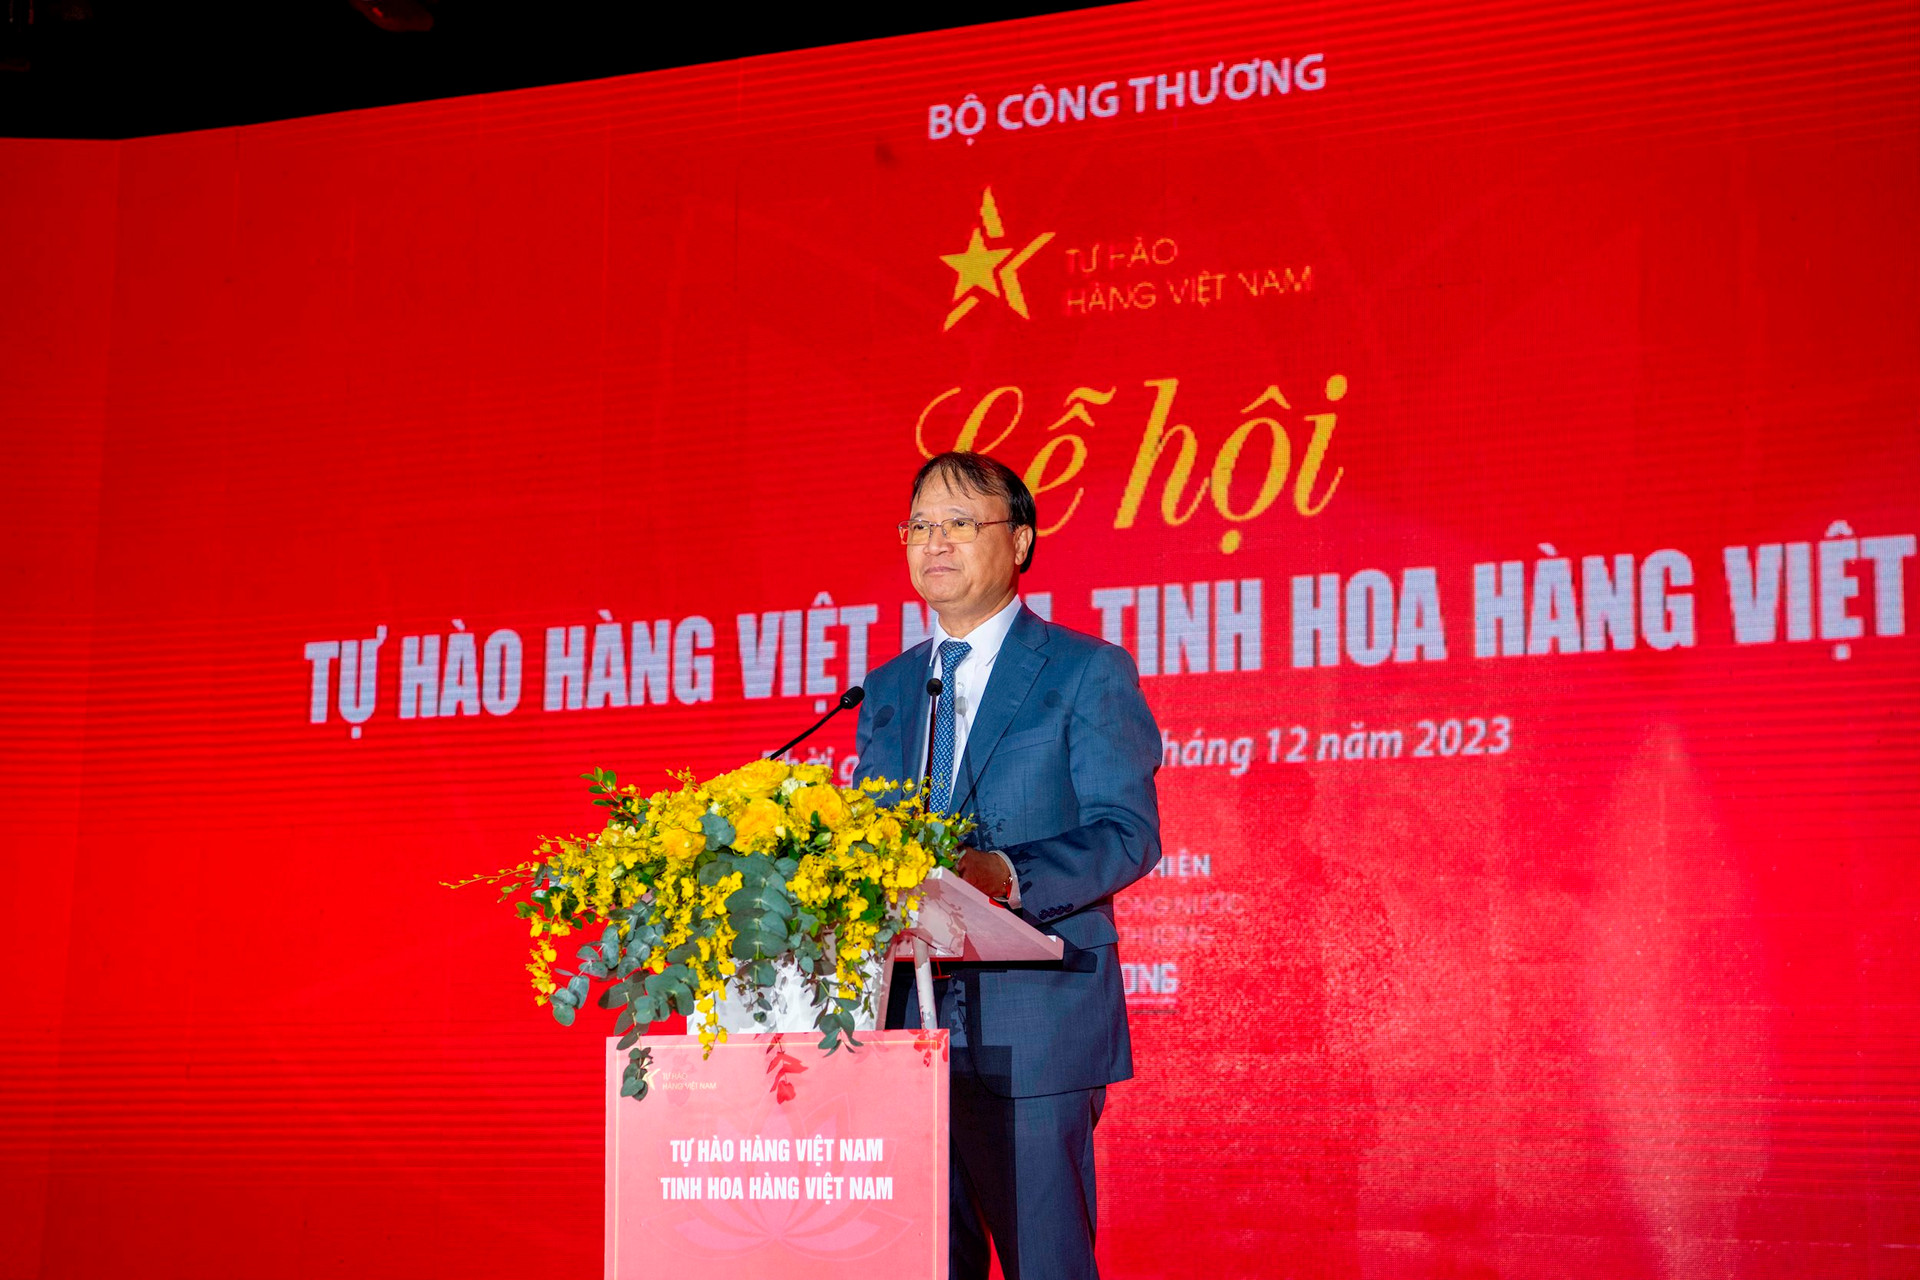 Hàng Việt ngày càng khẳng định vị thế tại thị trường nội địa - Ảnh 1.